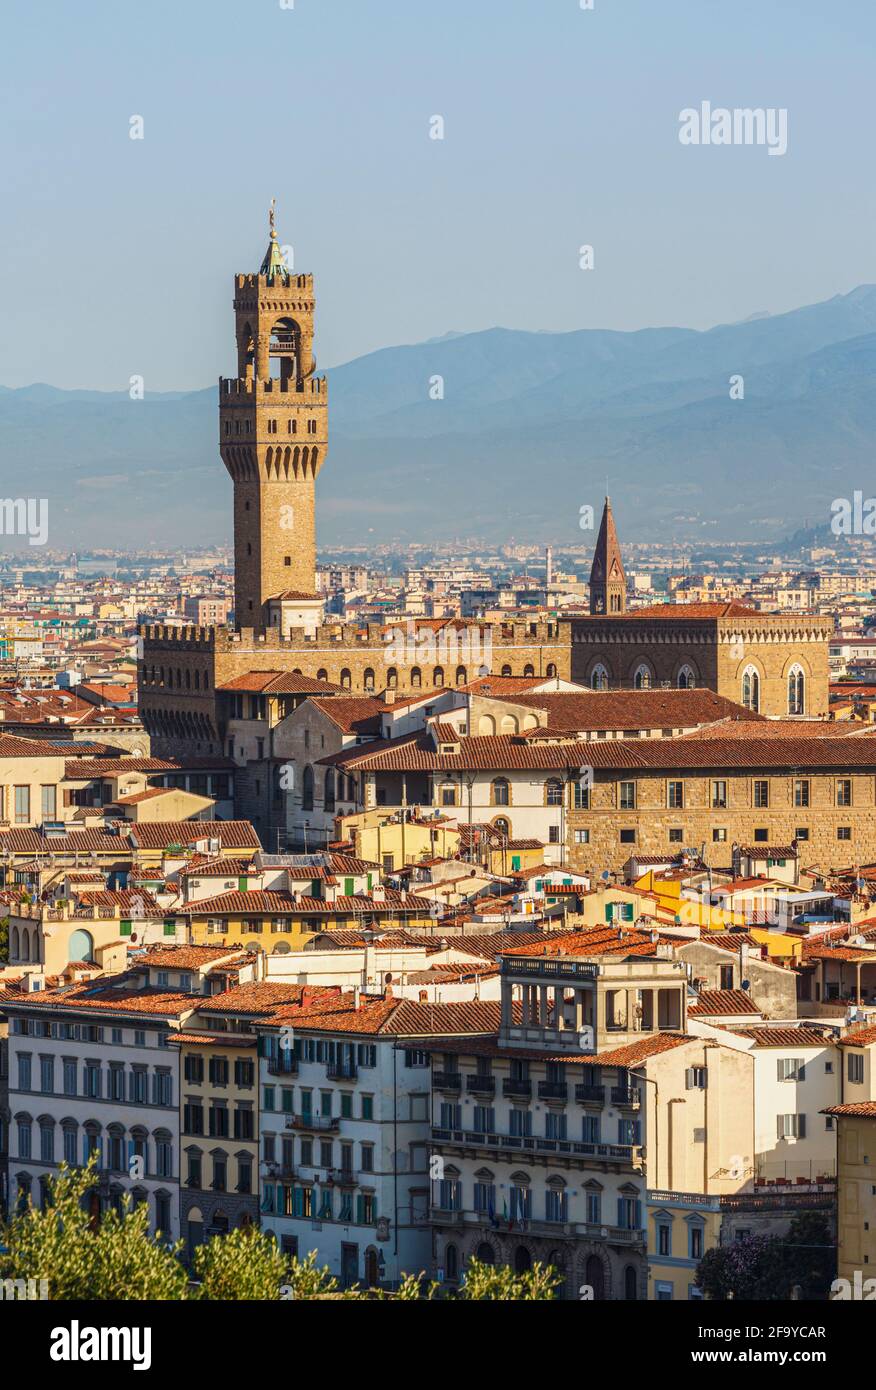 Florence, province de Florence, Toscane, Italie. La tour caractéristique du Palazzo Vecchio s'élève au-dessus des toits de la ville. Le centre historique de Florenc Banque D'Images